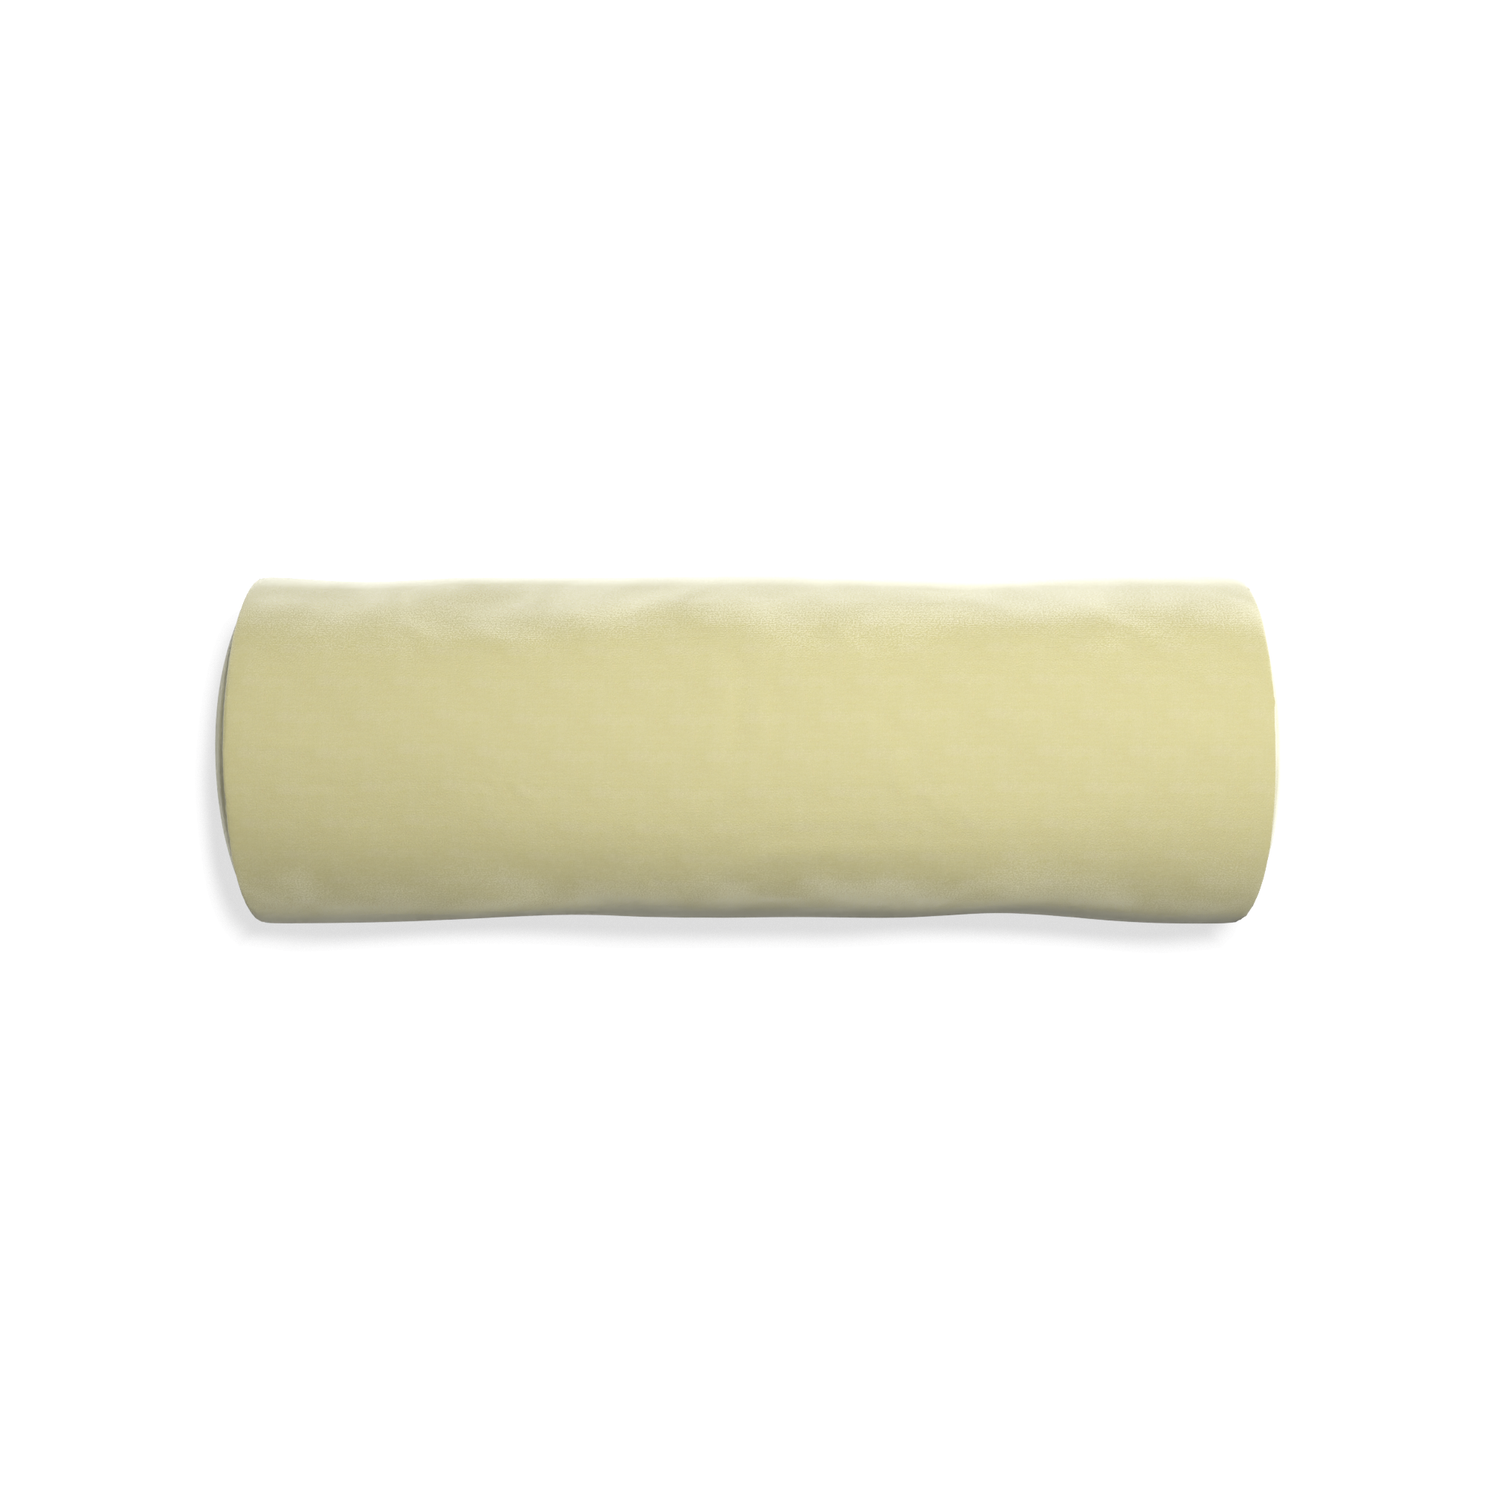 Bolster pear velvet custom pillow with none on white background